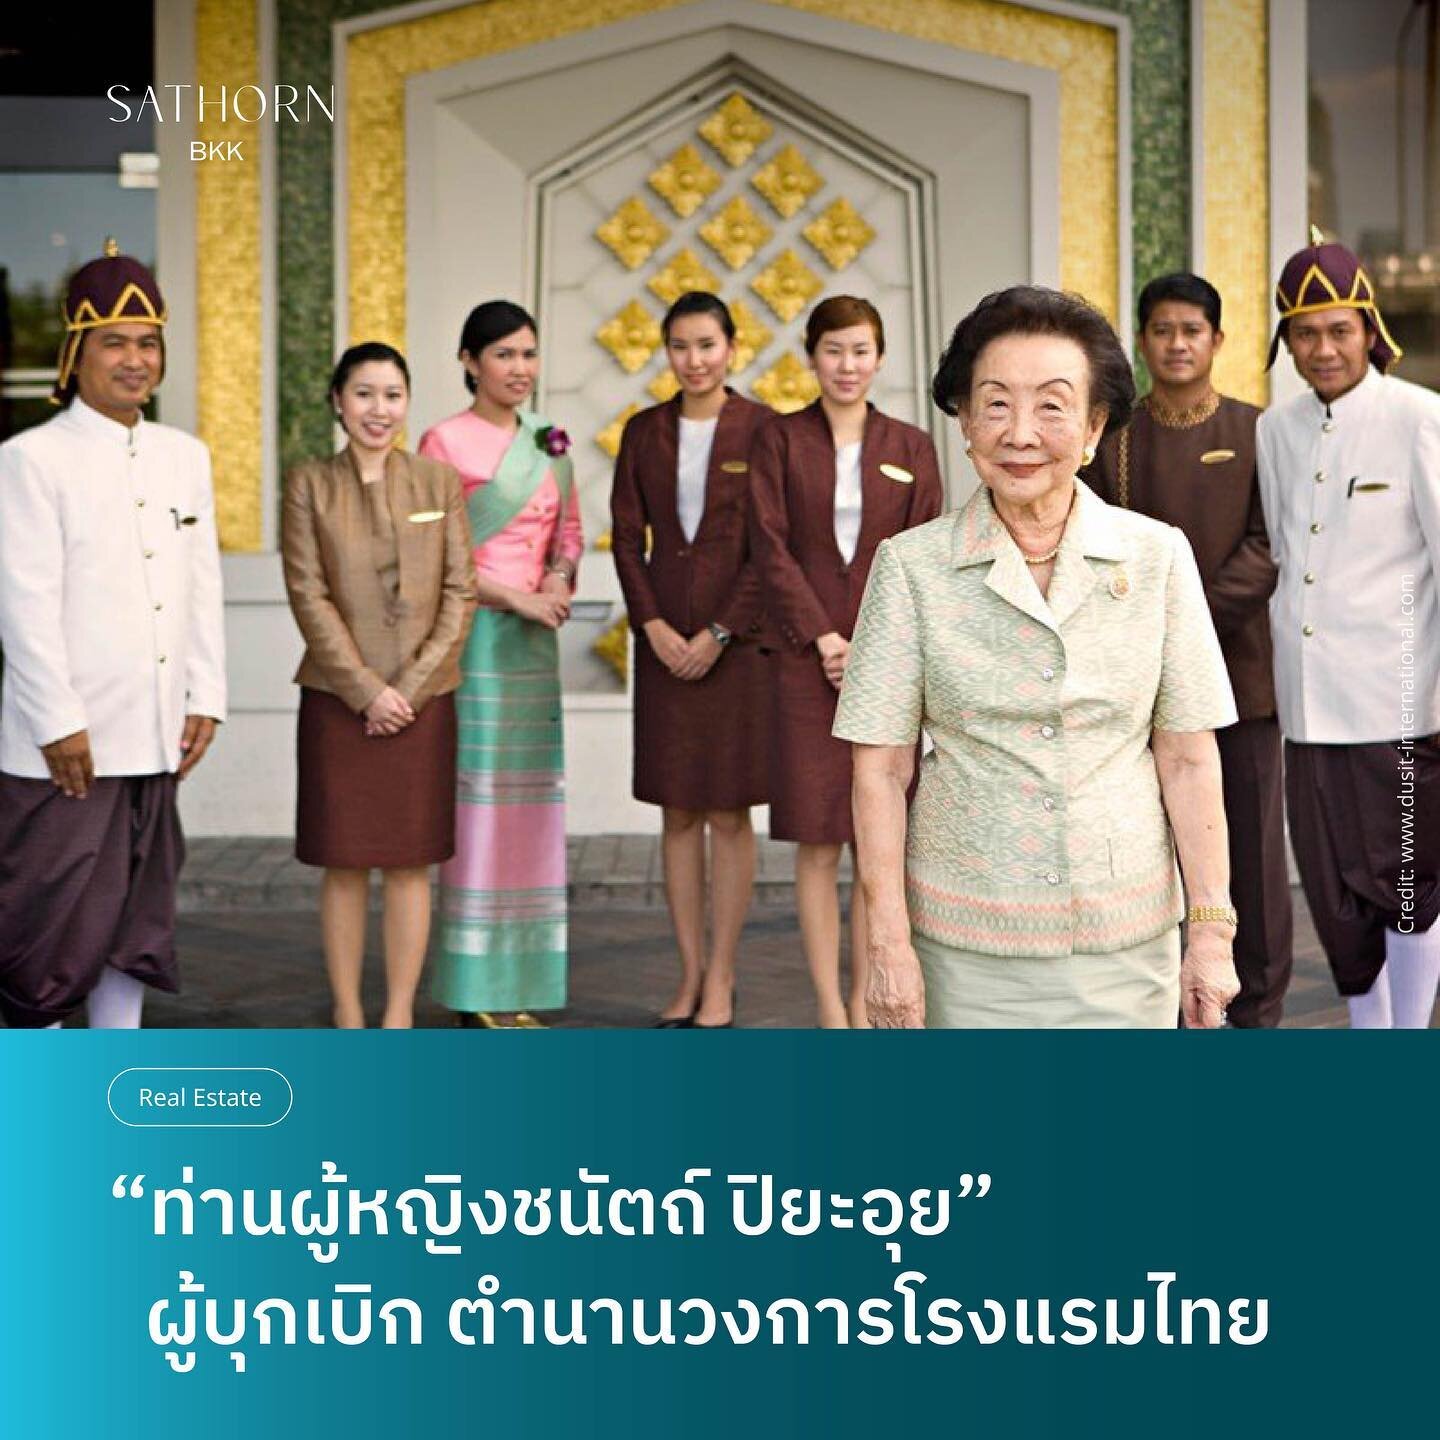 กว่าที่นักธุรกิจหญิงแกร่งในยุคนี้จะถูกเรียกเป็น &ldquo;girlboss&rdquo;  ท่านผู้หญิงชนัตถ์ ผู้ก่อตั้งโรงแรมหรูระดับ 5 ดาวแห่งแรกของเมืองไทย ได้ทำให้ประเทศไทยก้าวเข้าสู่ยุคทองของอุตสาหกรรมการท่องเที่ยว  ล้ำหน้าเป็น girlboss ตั้งแต่เมื่อ 50 ปีที่แล้ว

ค